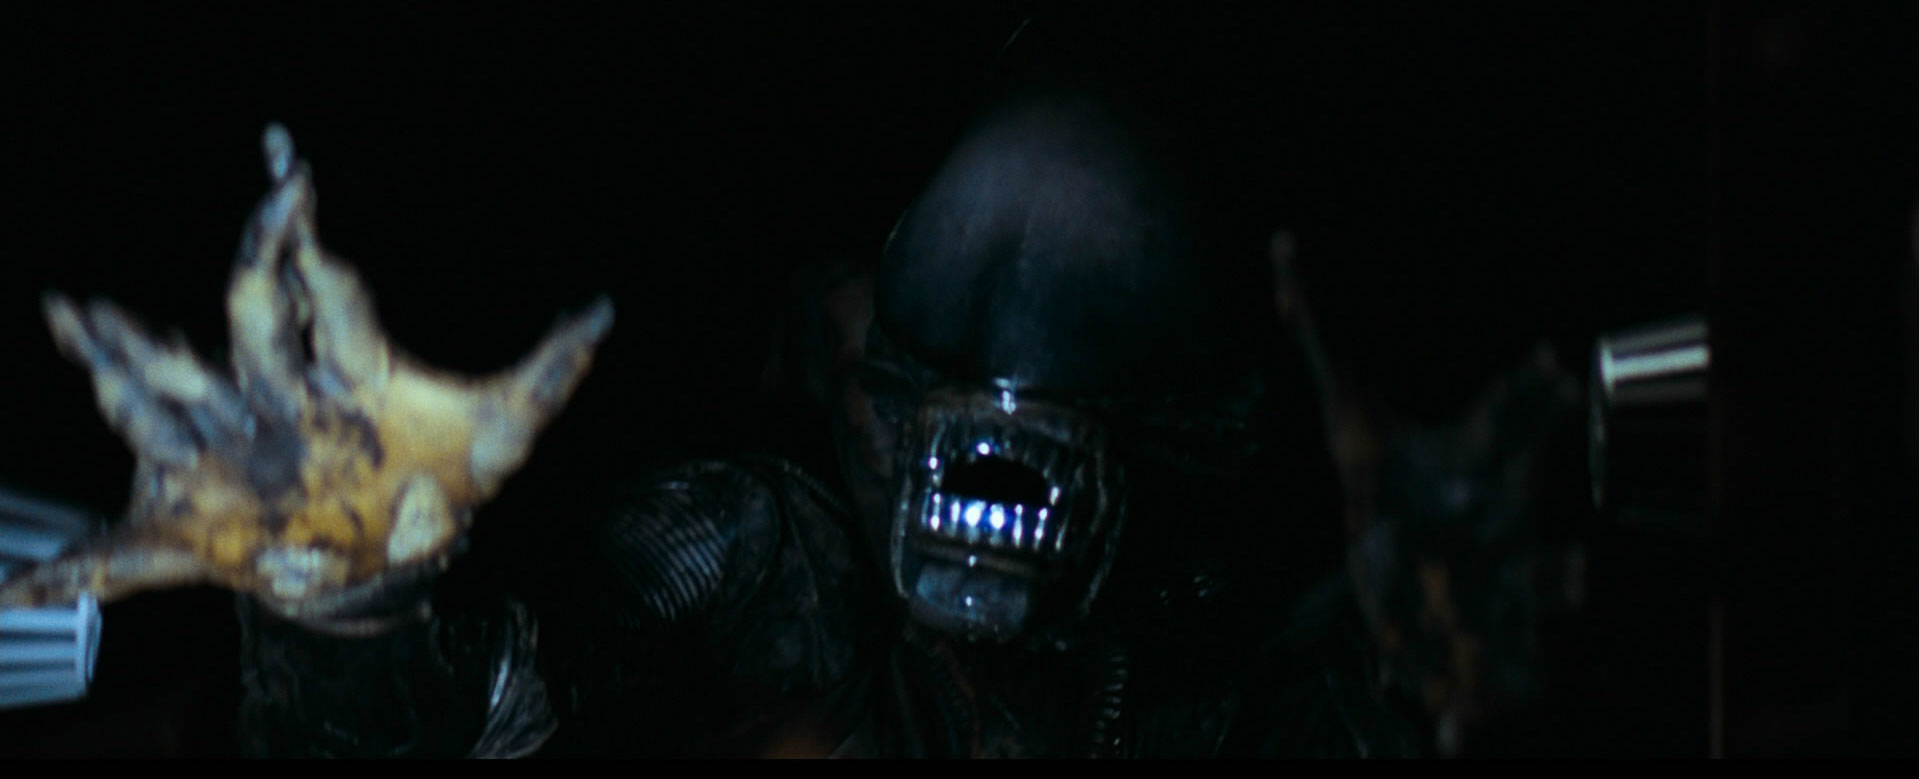 Twórcy Metroida czerpali garściami z filmu Obcy – 8. pasażer Nostromo. Analogii pomiędzy grami a dziełem Ridleya Scotta jest cała masa.